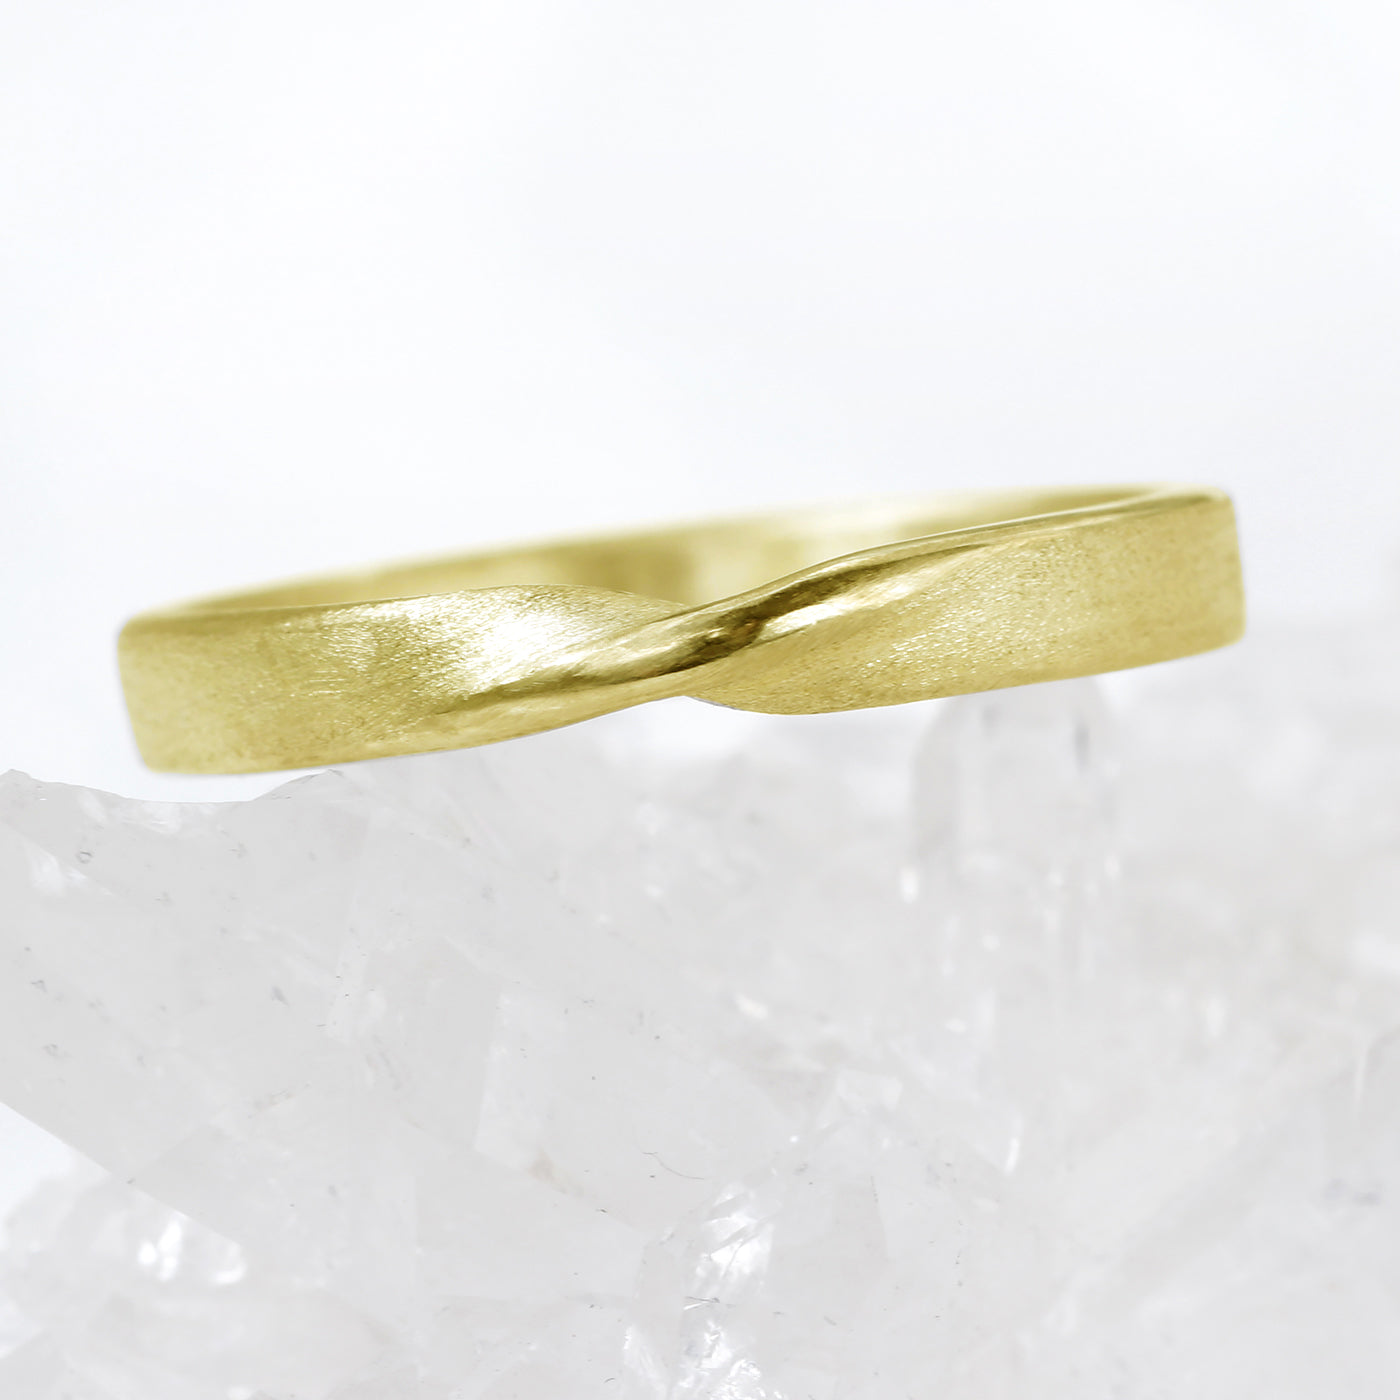 18ct Gold 3mm Spun Silk Ribbon Twist Wedding Ring